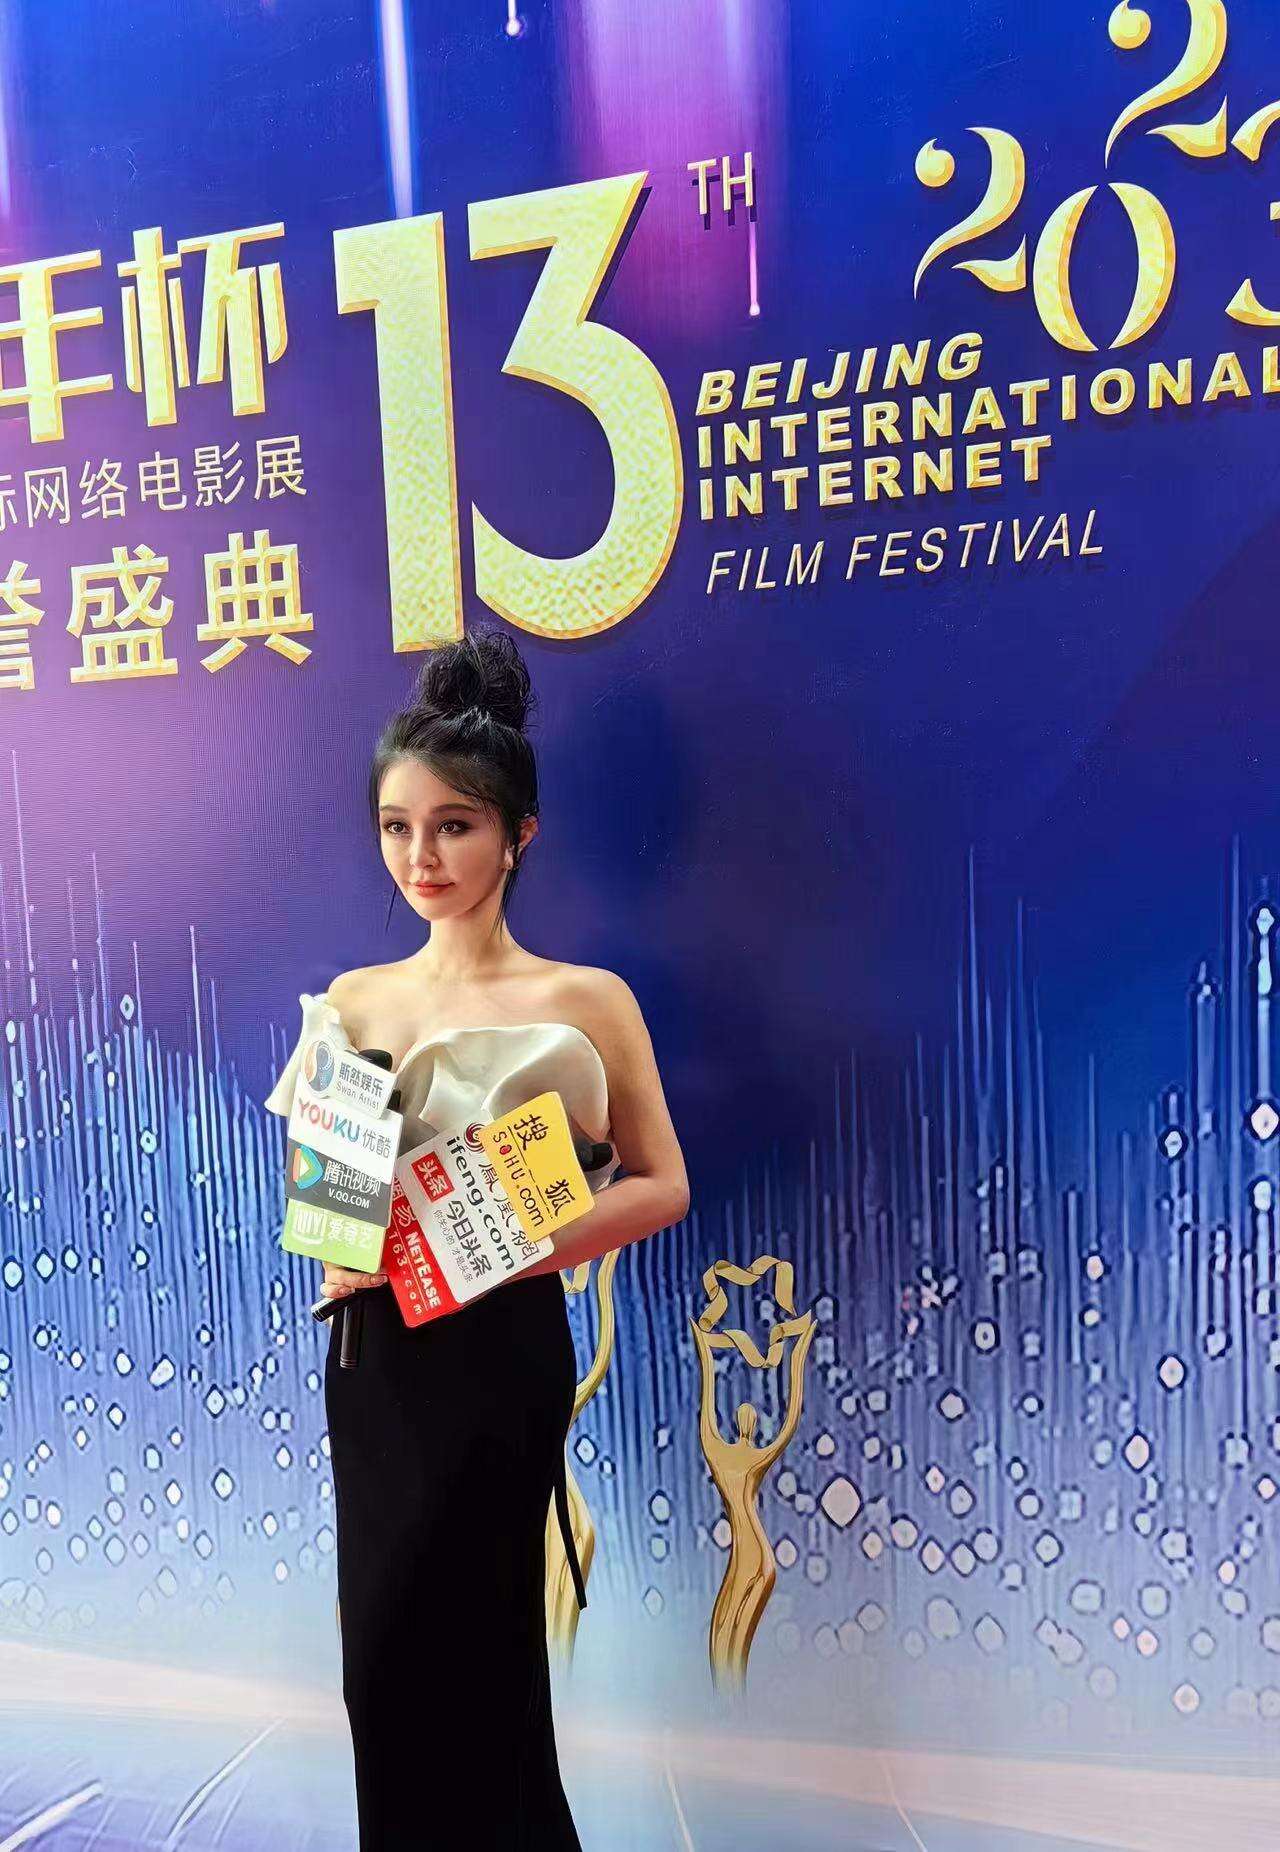 时尚设计师沈美琪应邀出席第十三届北京国际网络电影节